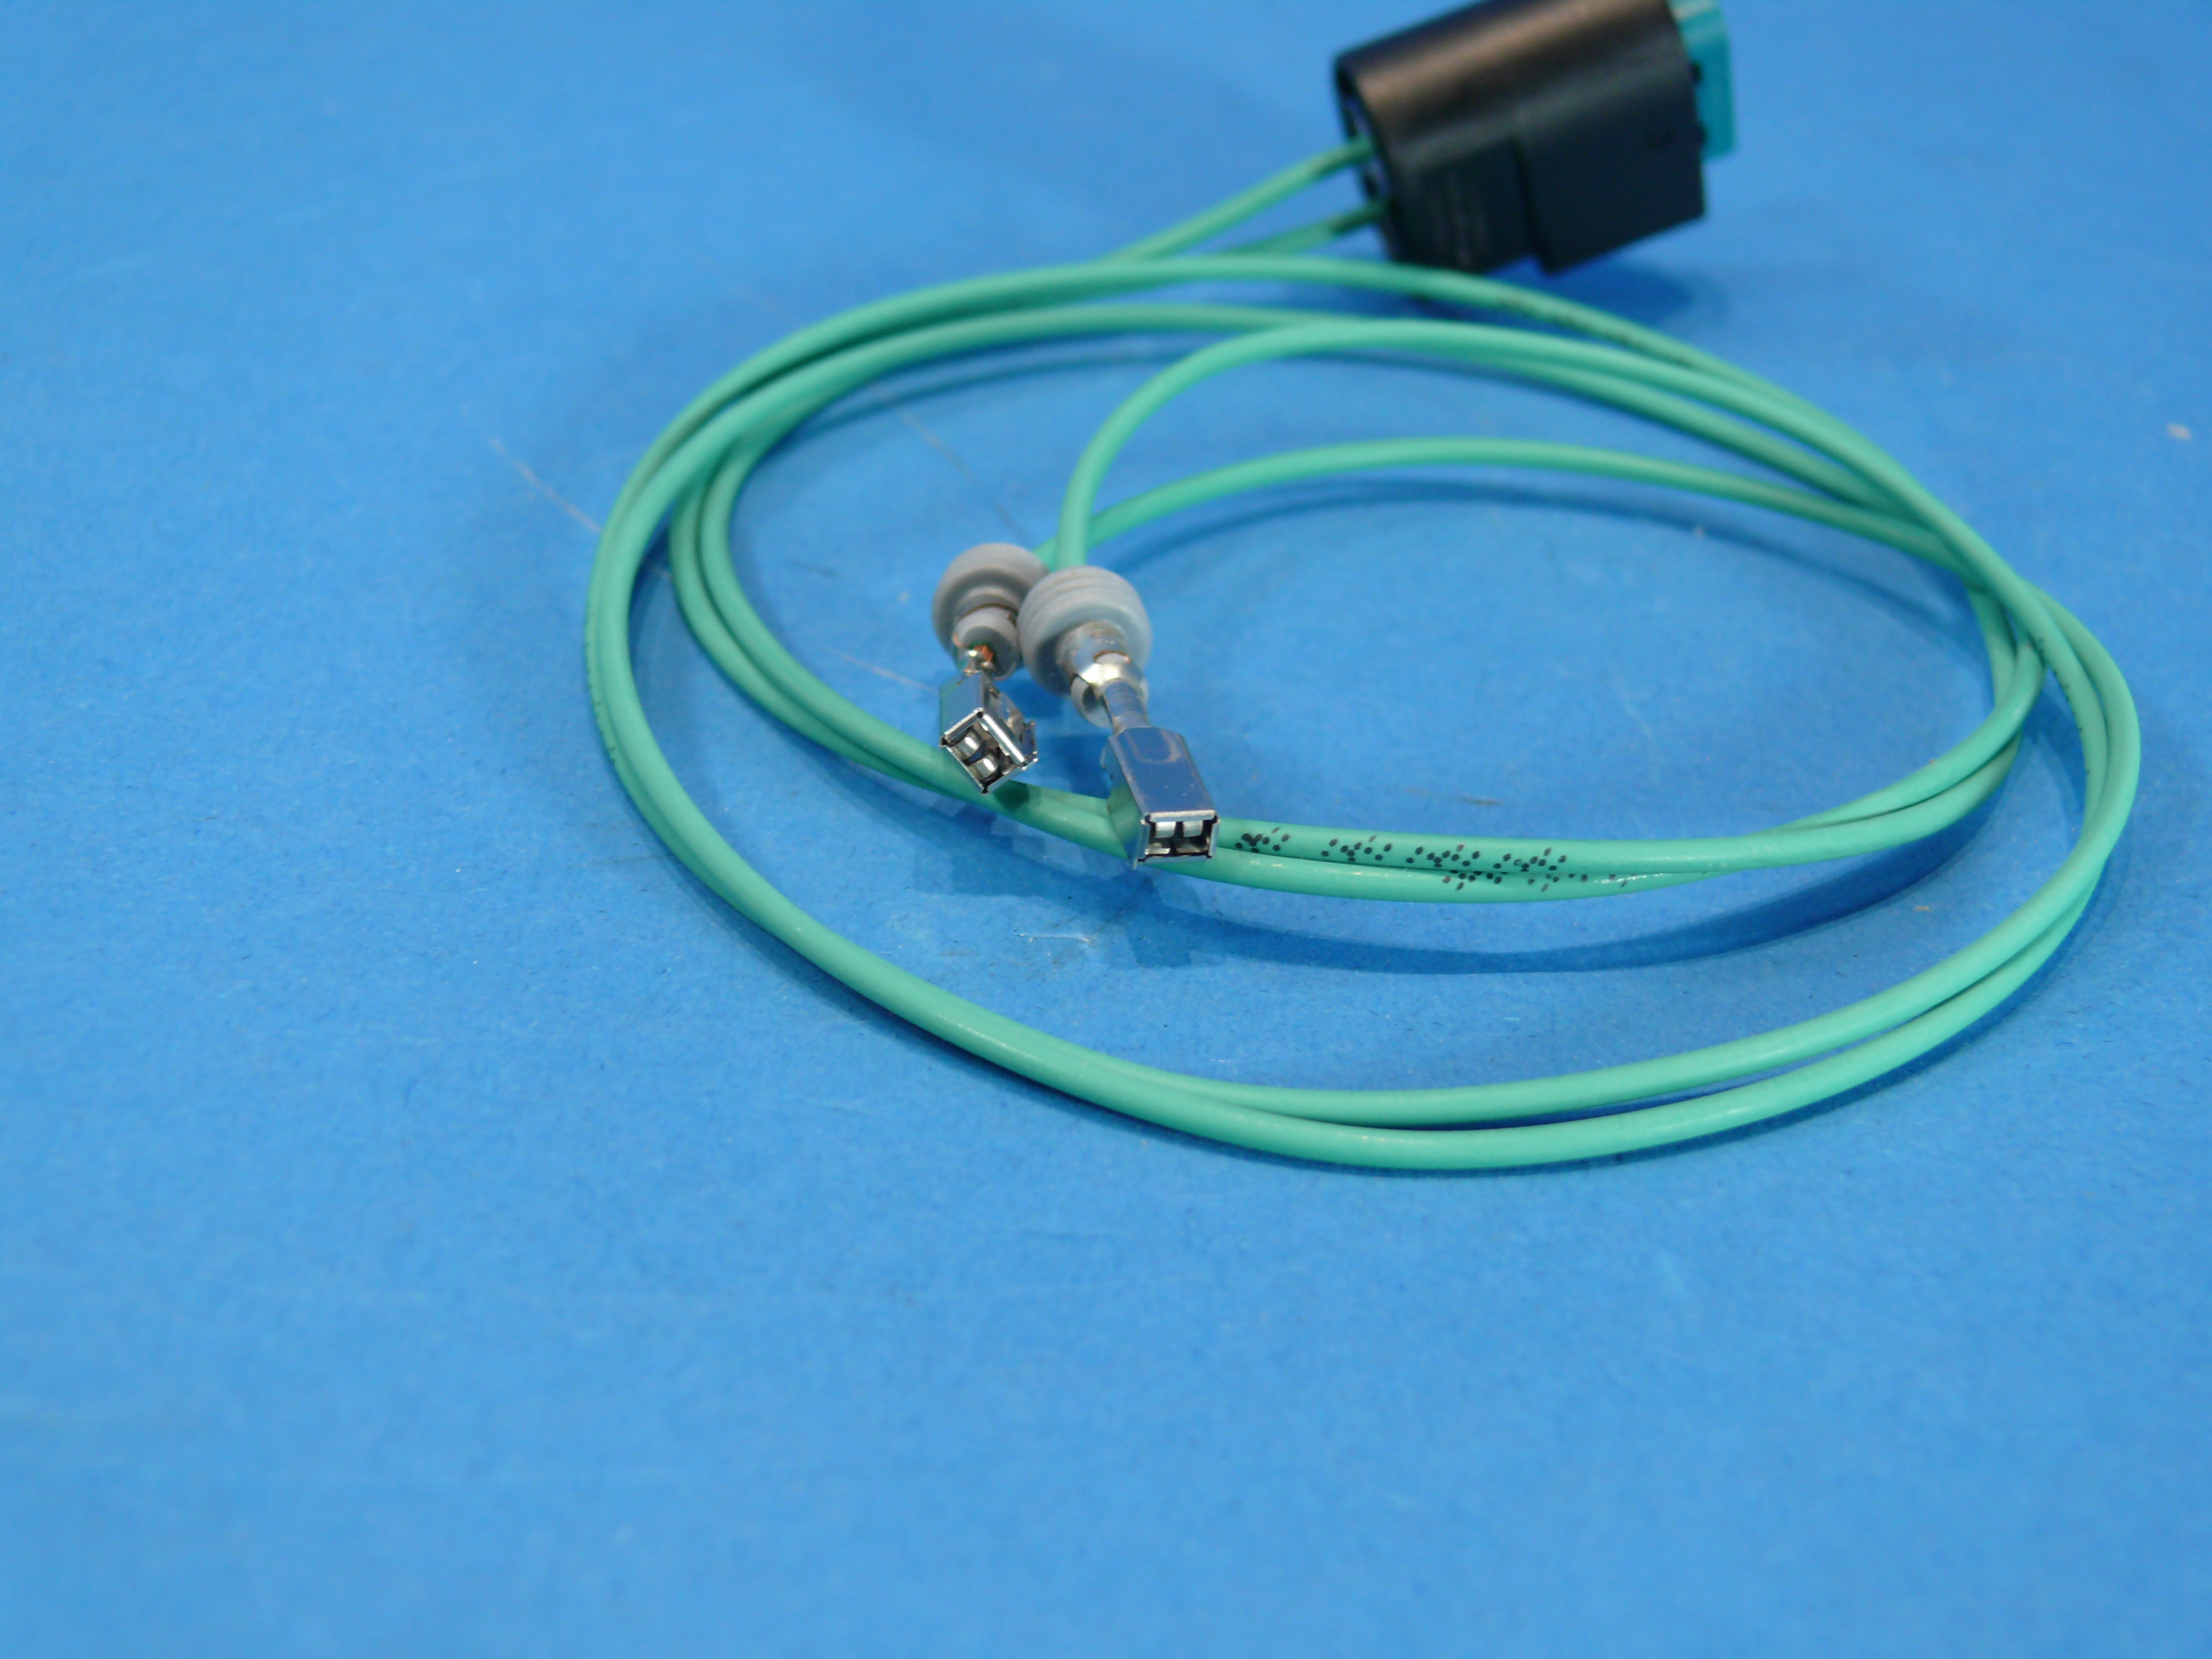 FMW Tuning & Autoteile - Kabelsatz mit Stecker für z.B. Blinker / Hupe /  Dieselpumpe / Nebelscheinwerfer / Nebelschlußleuchte / Standlicht  (61138373332,61130007256) 